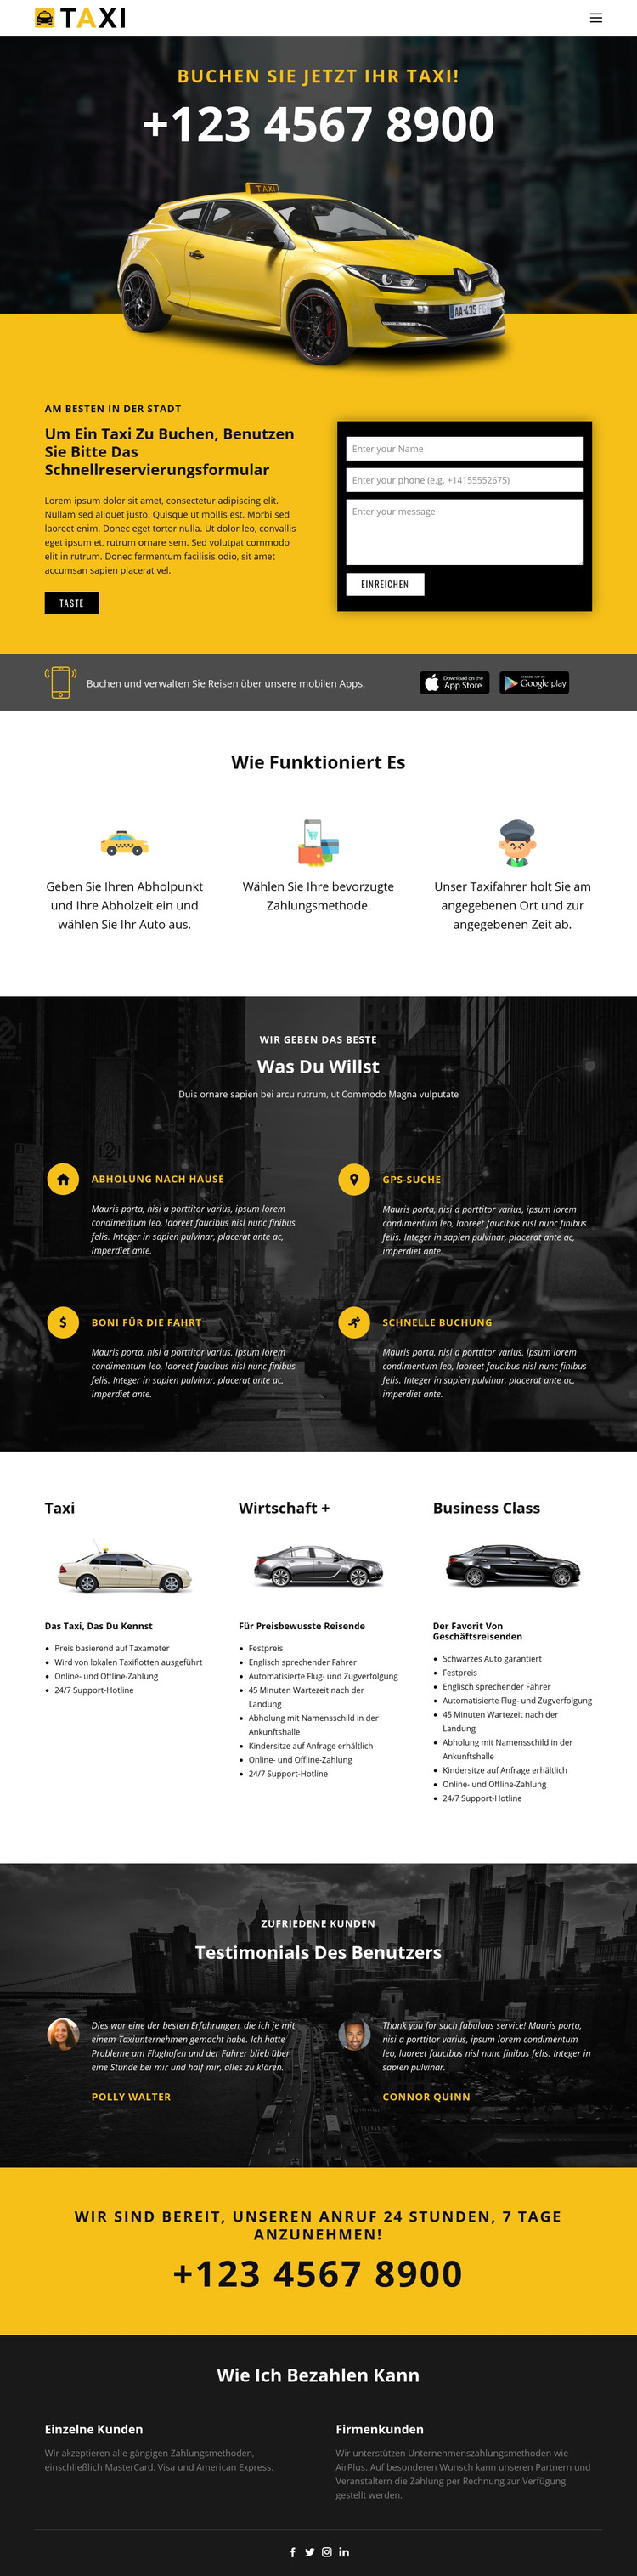 Schnellste Taxis HTML-Vorlage